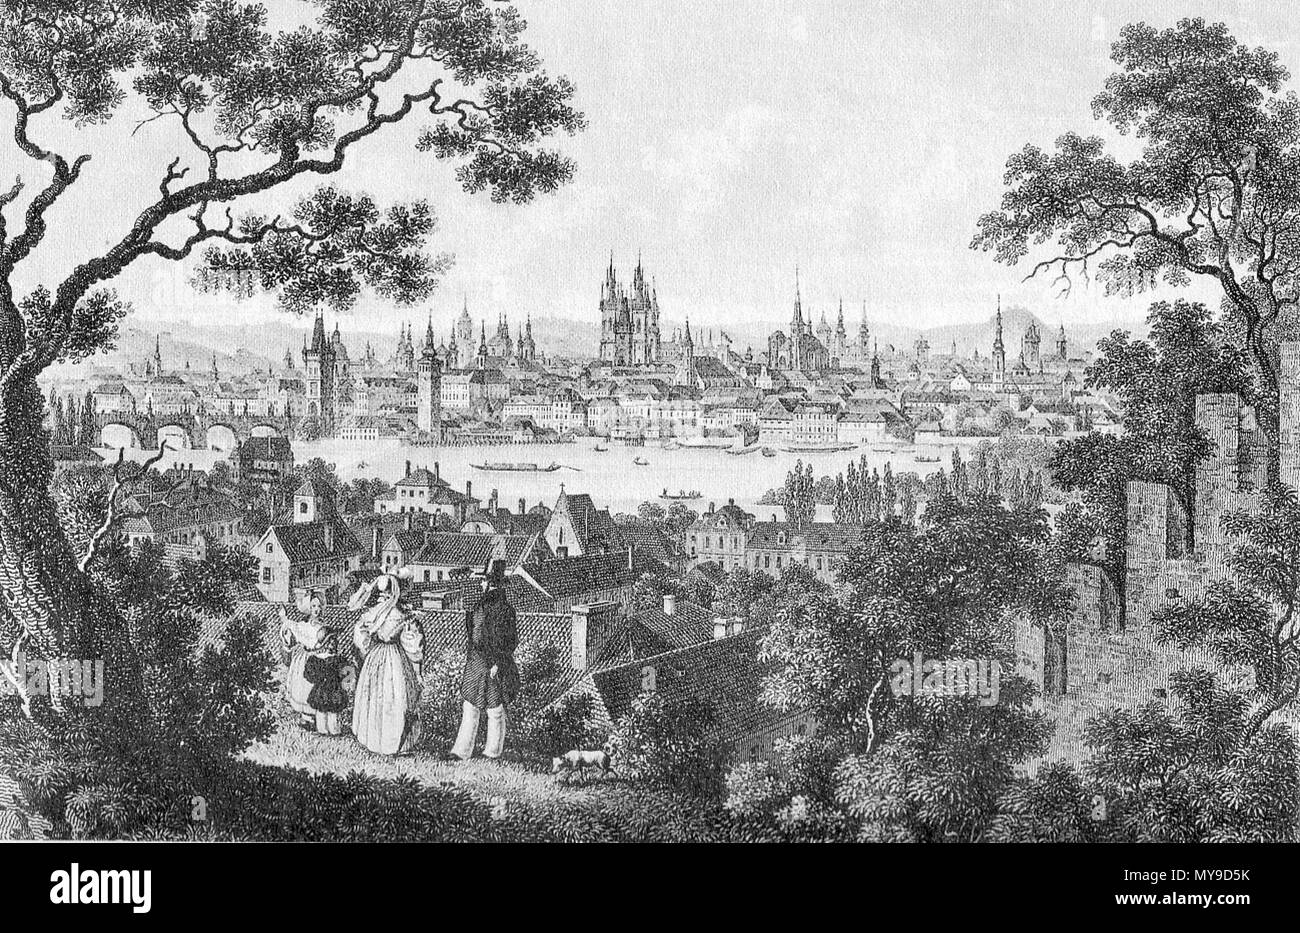 . Historische Ansicht von Prag in Tschechien. Stahlstich. circa 1850. Wilh. Kandler, C. F. Merckel 43 Ansicht Prag um 1850 Stock Photo